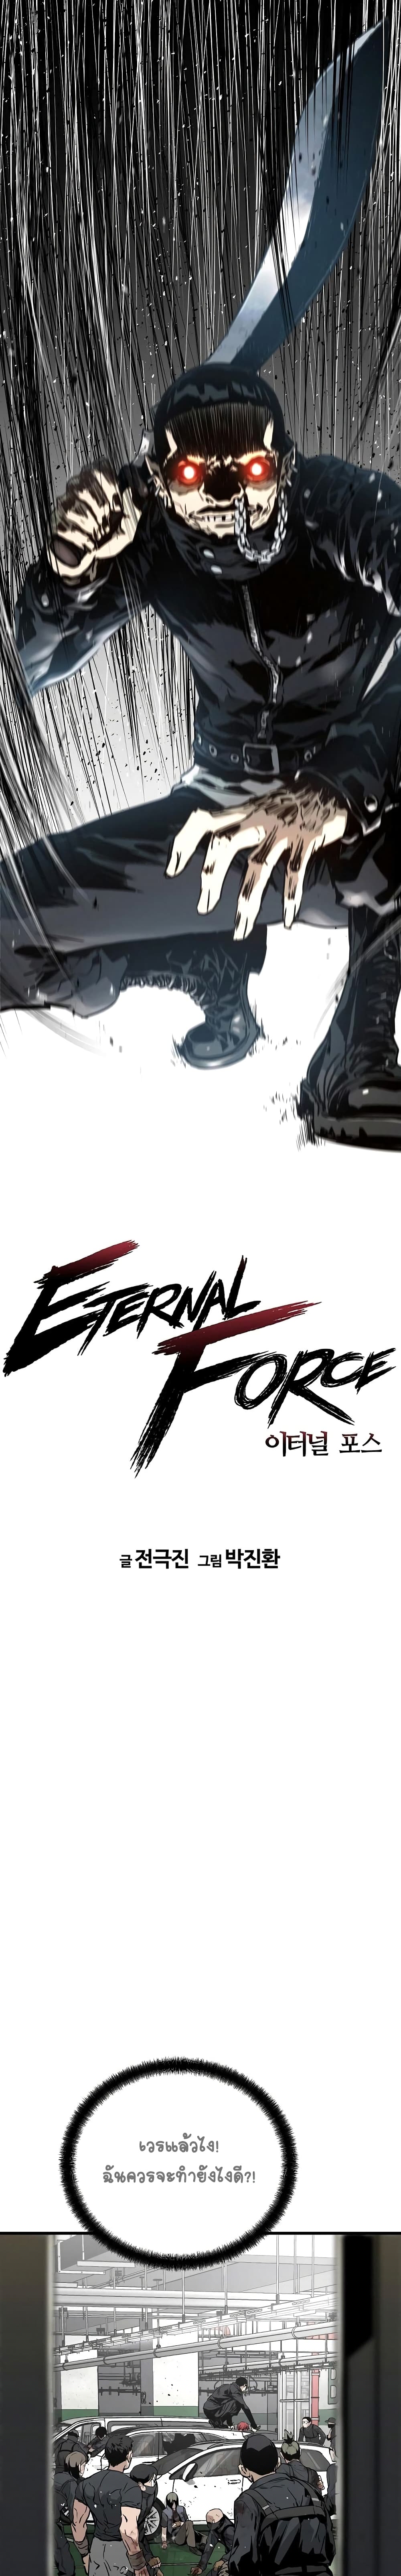 The Breaker 3 Eternal Force à¸•à¸­à¸™à¸—à¸µà¹ˆ 8 (7)